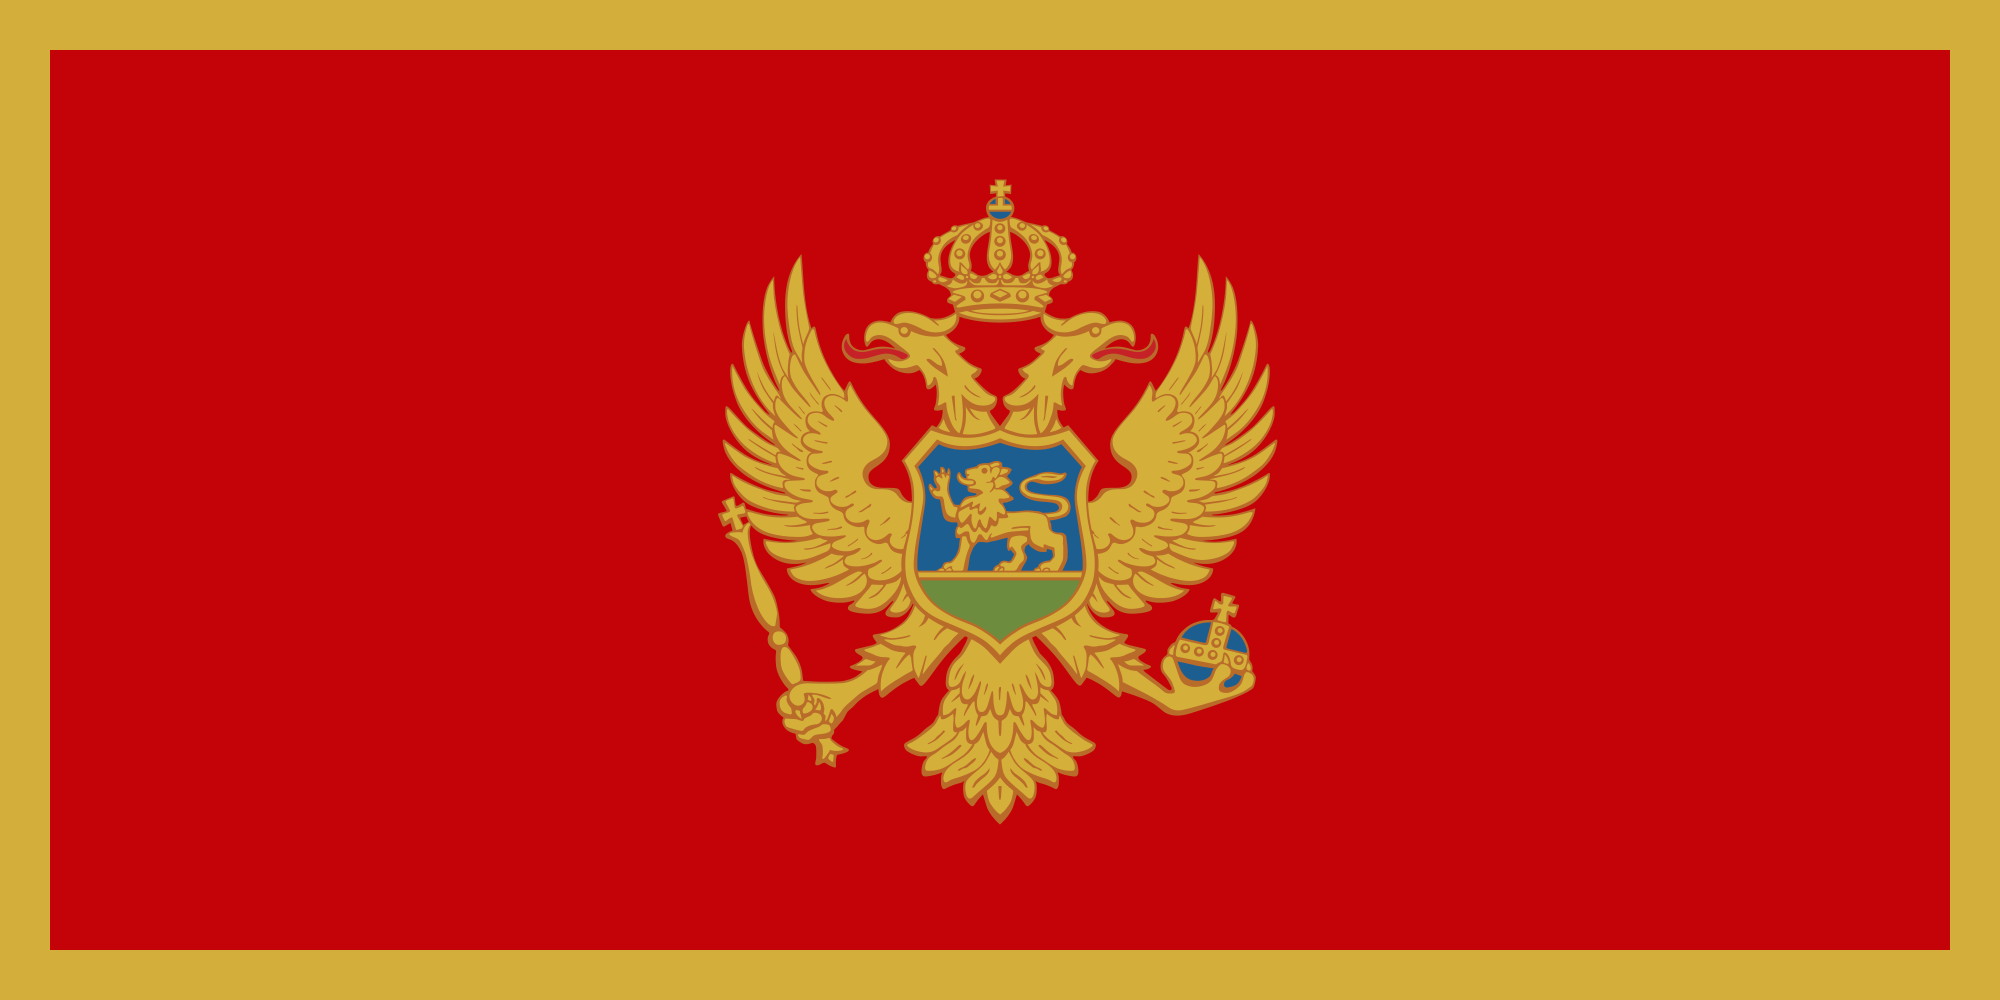 Montenegro Flag Image - Free Download